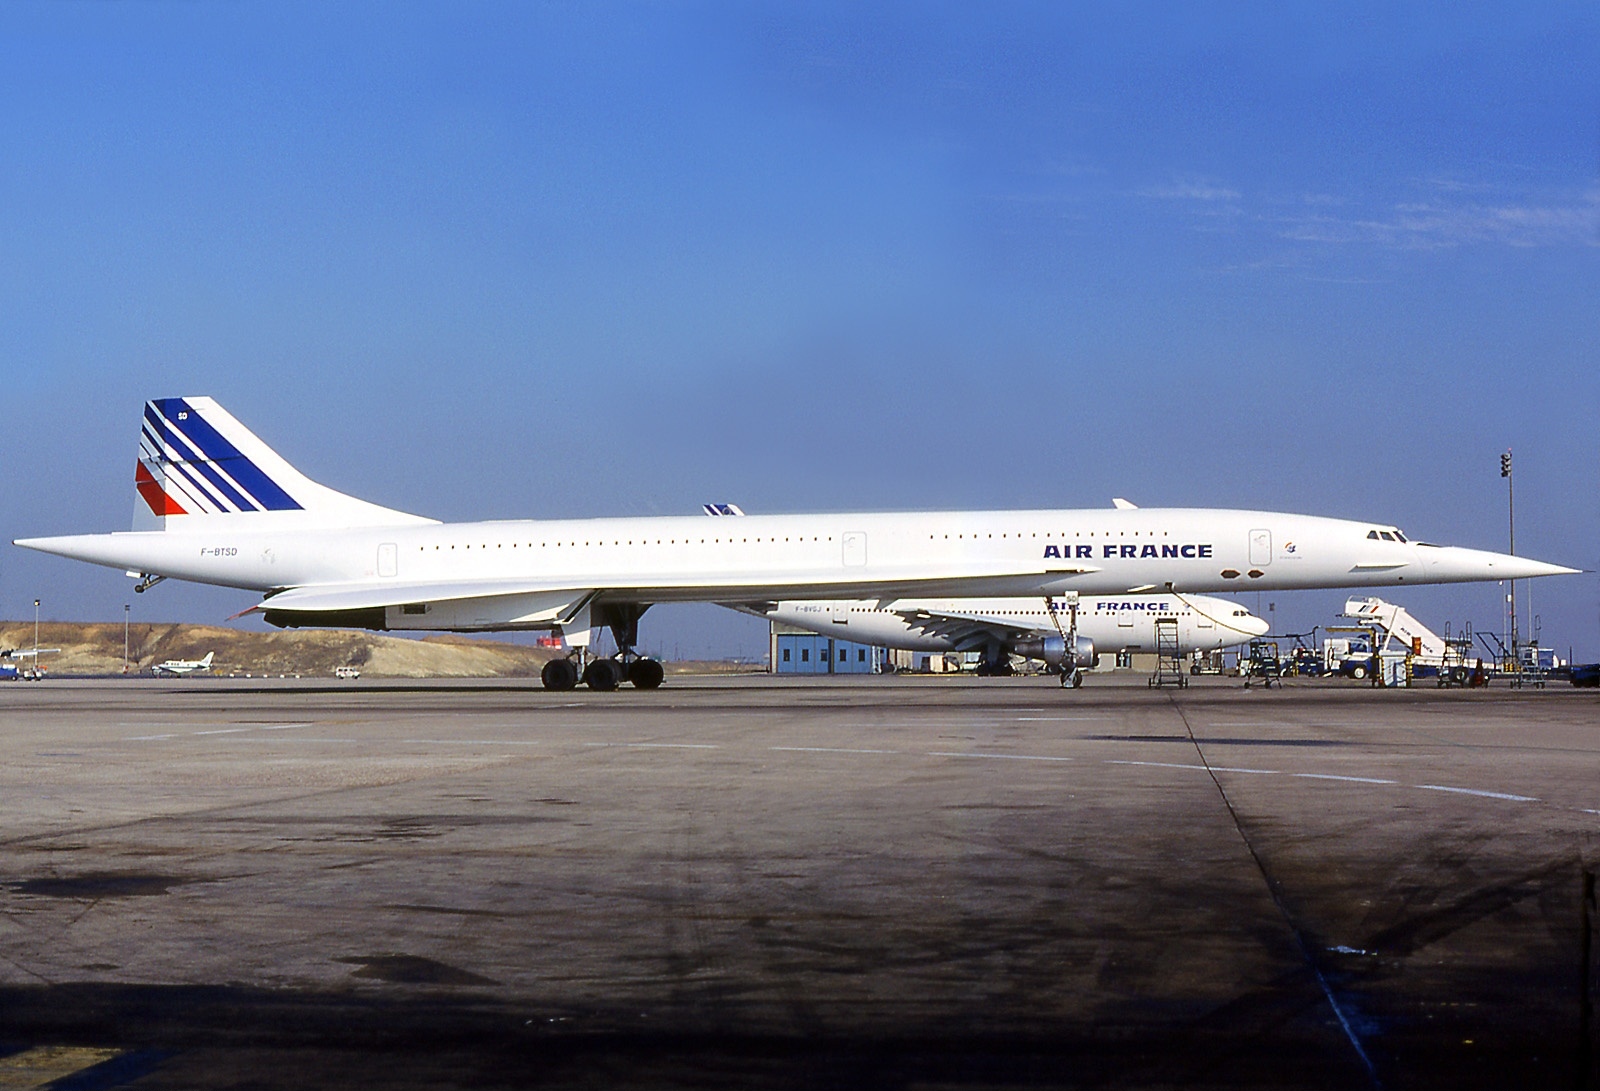 Aerospatiale-British Aerospace Concorde #06